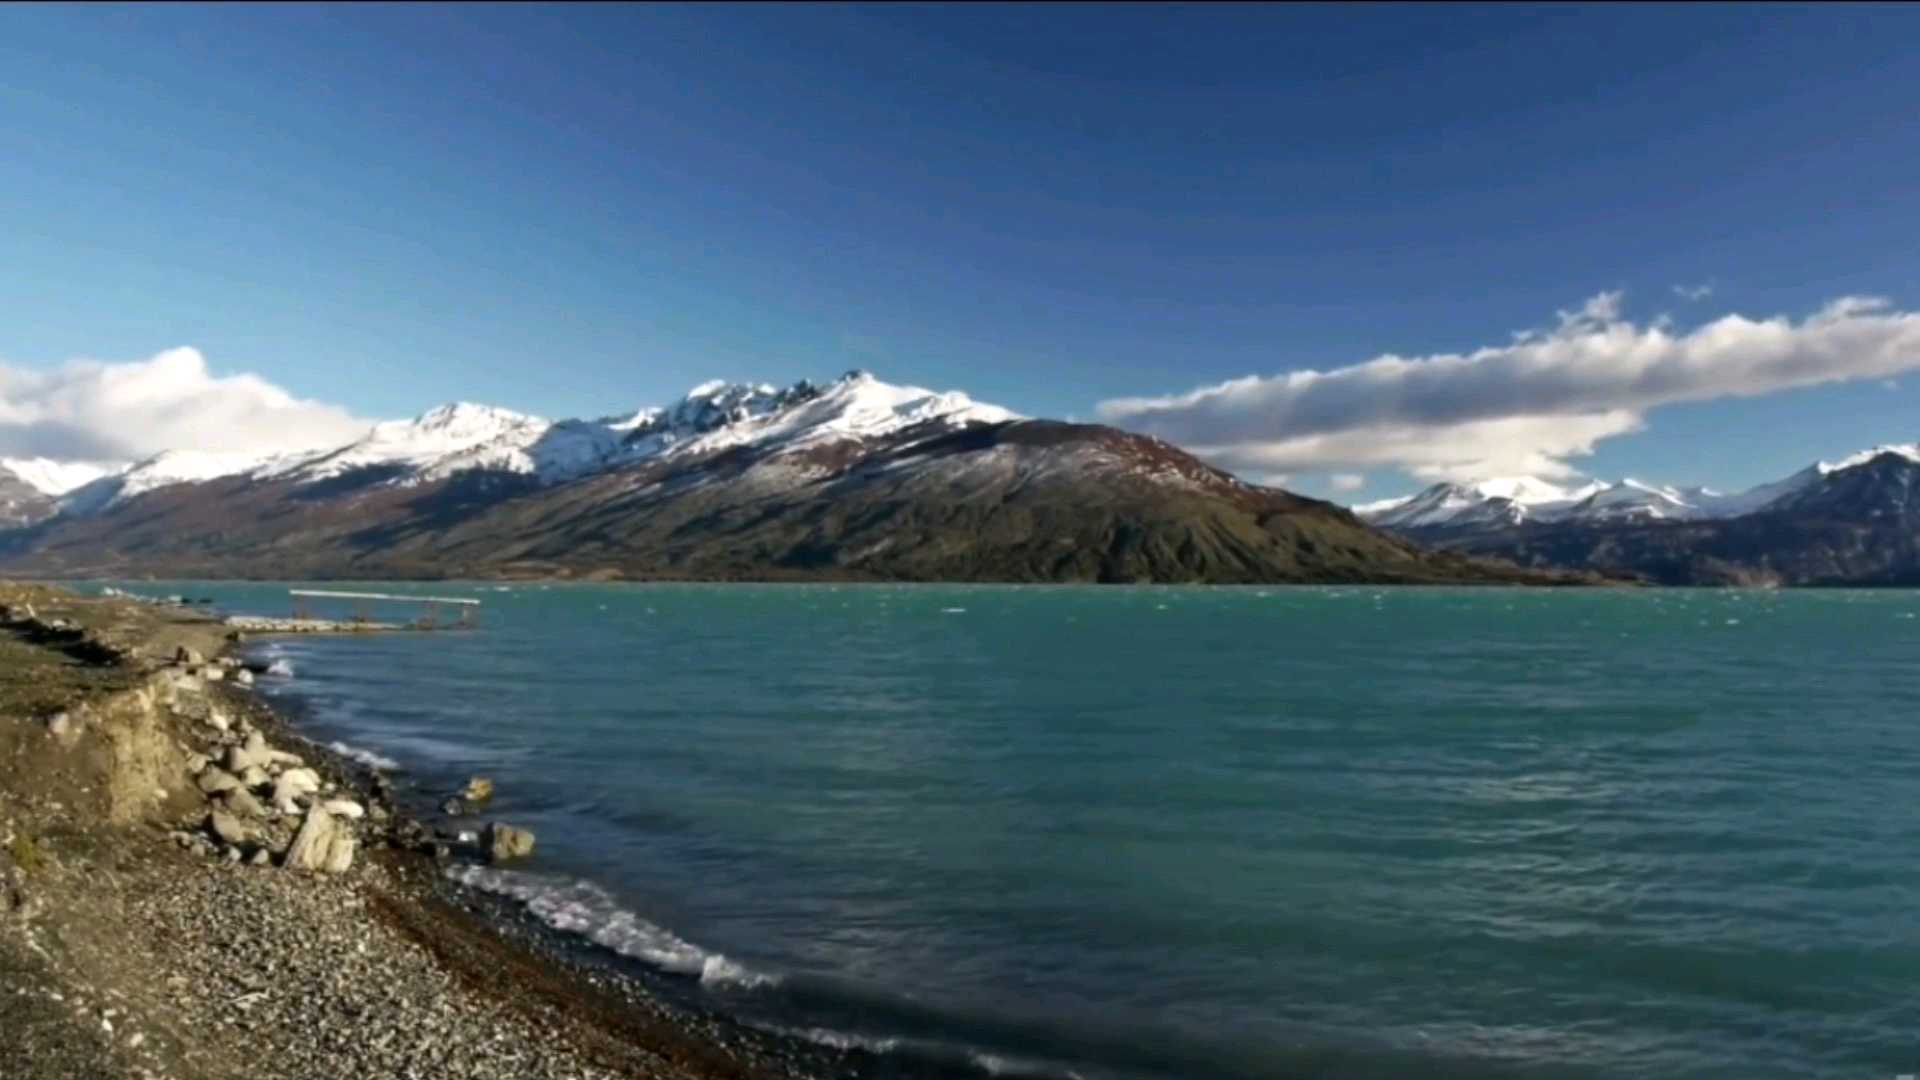 今天带你欣赏一下阿根廷冰川国家公园附近的美丽景色